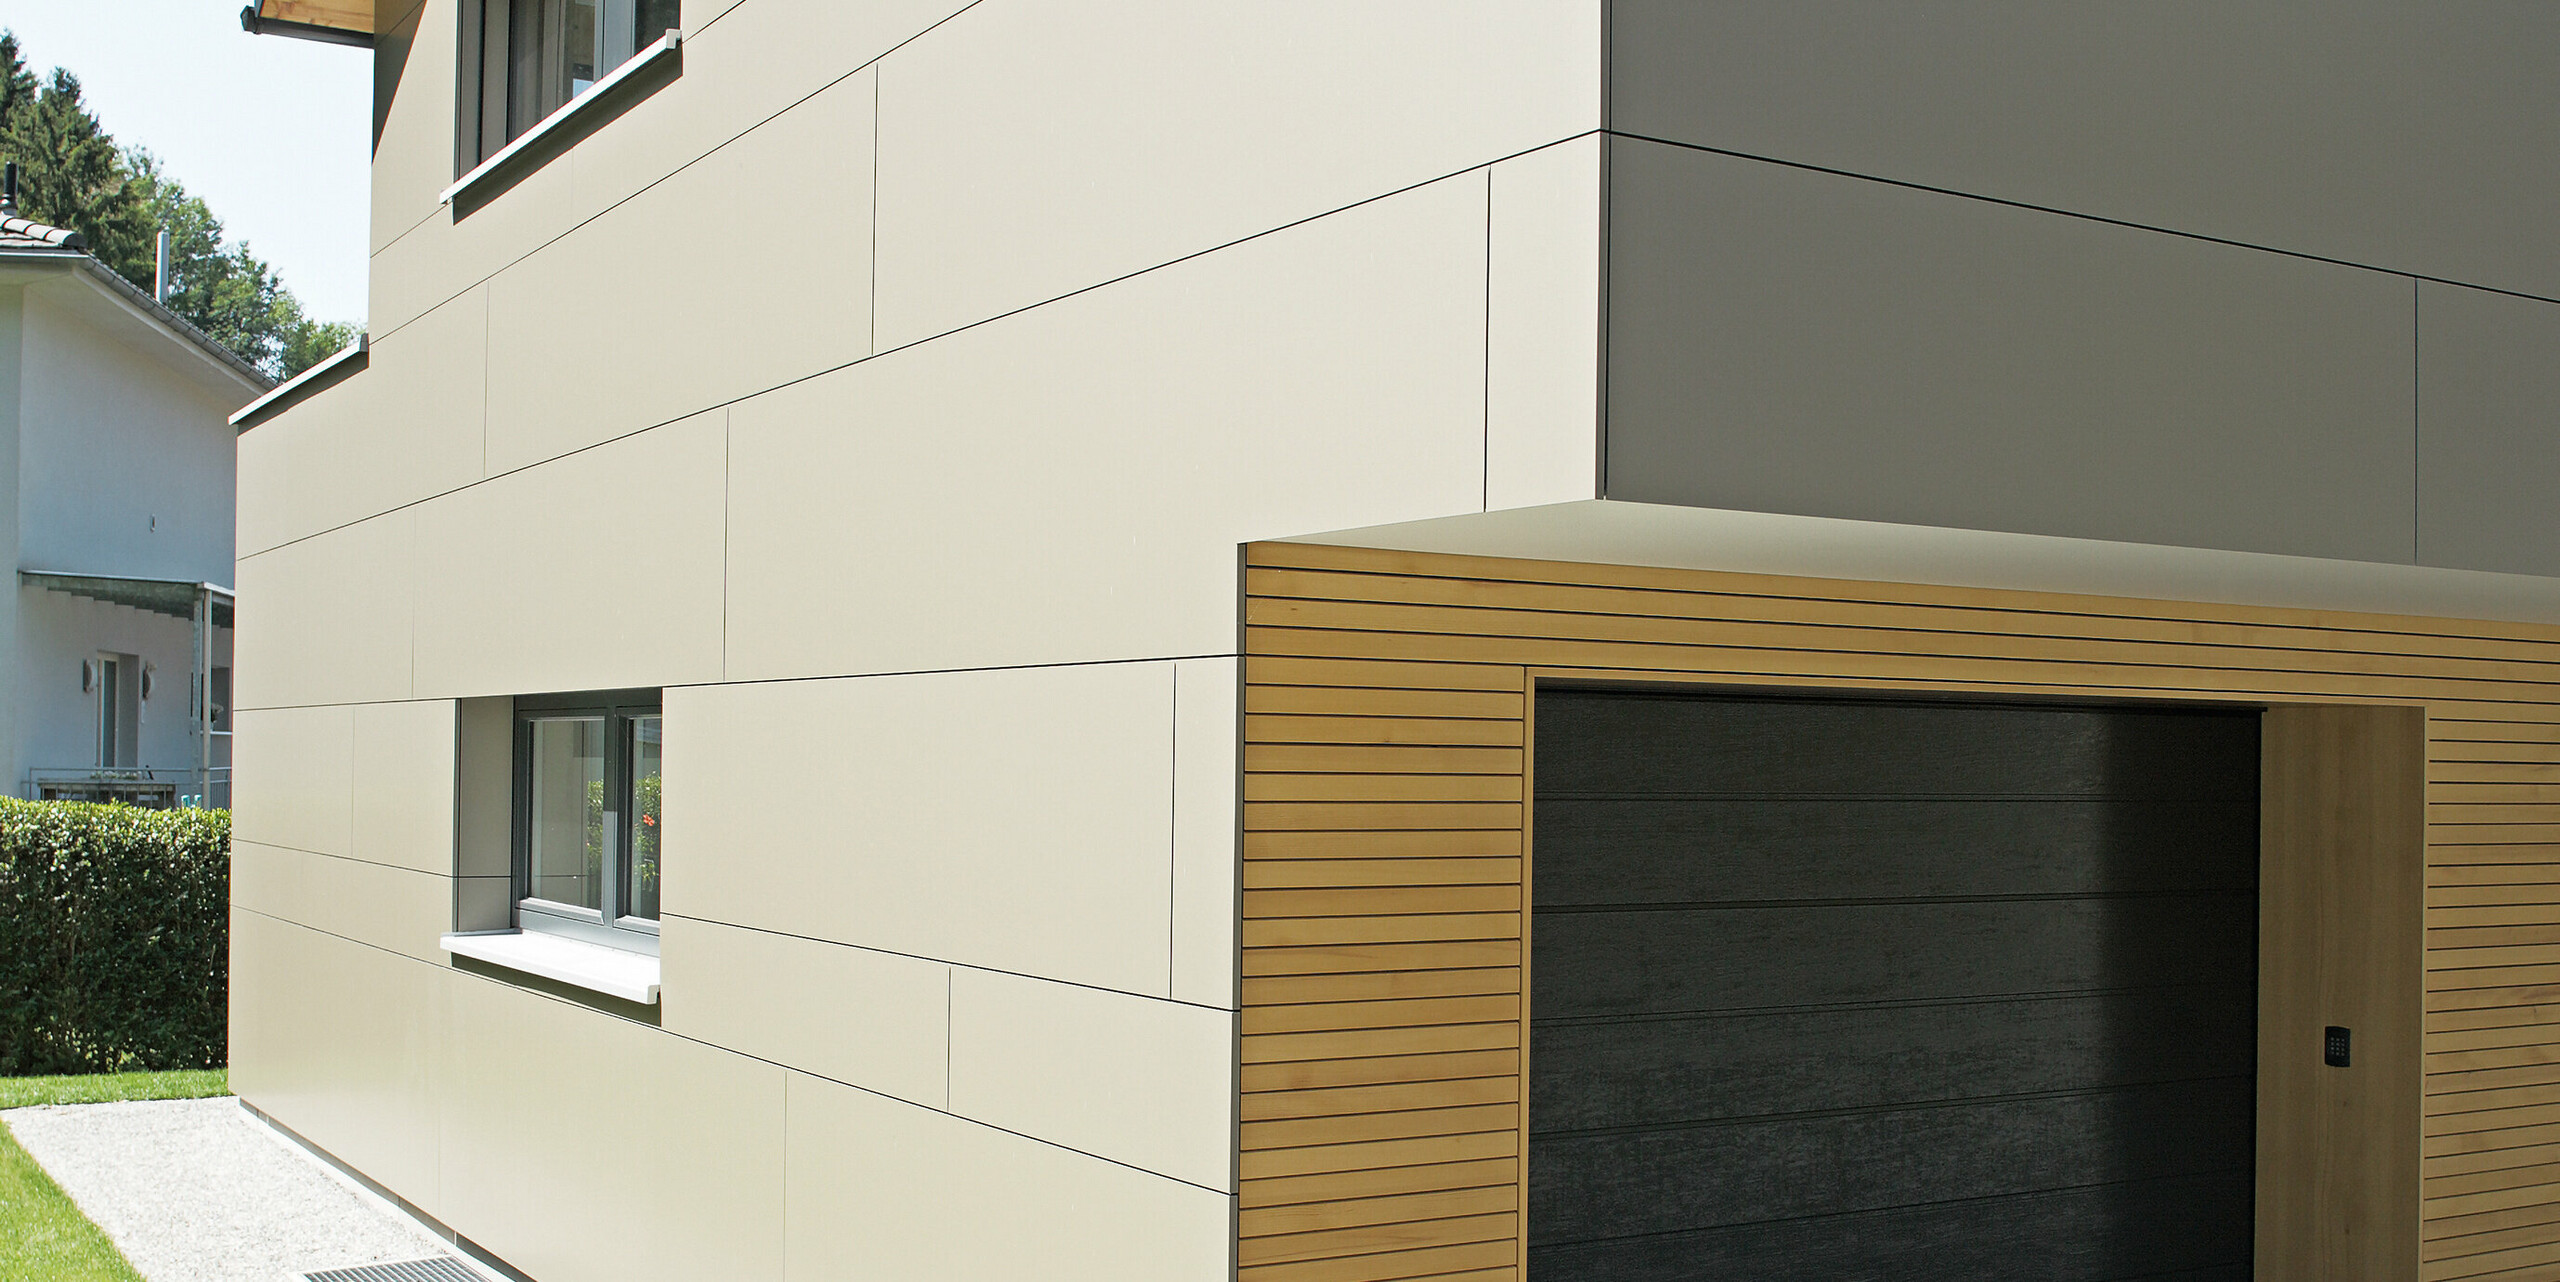 Moderne Architektur eines Einfamilienhauses in Hohenems, gezeigt an der Ecke mit Garage. Die Fassade besteht aus PREFA Aluminium Verbundplatten in der Farbe Bronzemetallic, die eine klare, minimalistische Ästhetik bieten. Die warmen Holzakzente um die Garage setzen einen natürlichen Kontrast zur metallischen Fassade, während das schräge Dach mit den dunklen PREFA Dachplatten in P.10 Anthrazit den konstruktiven Schutz und das durchdachte Design hervorhebt.